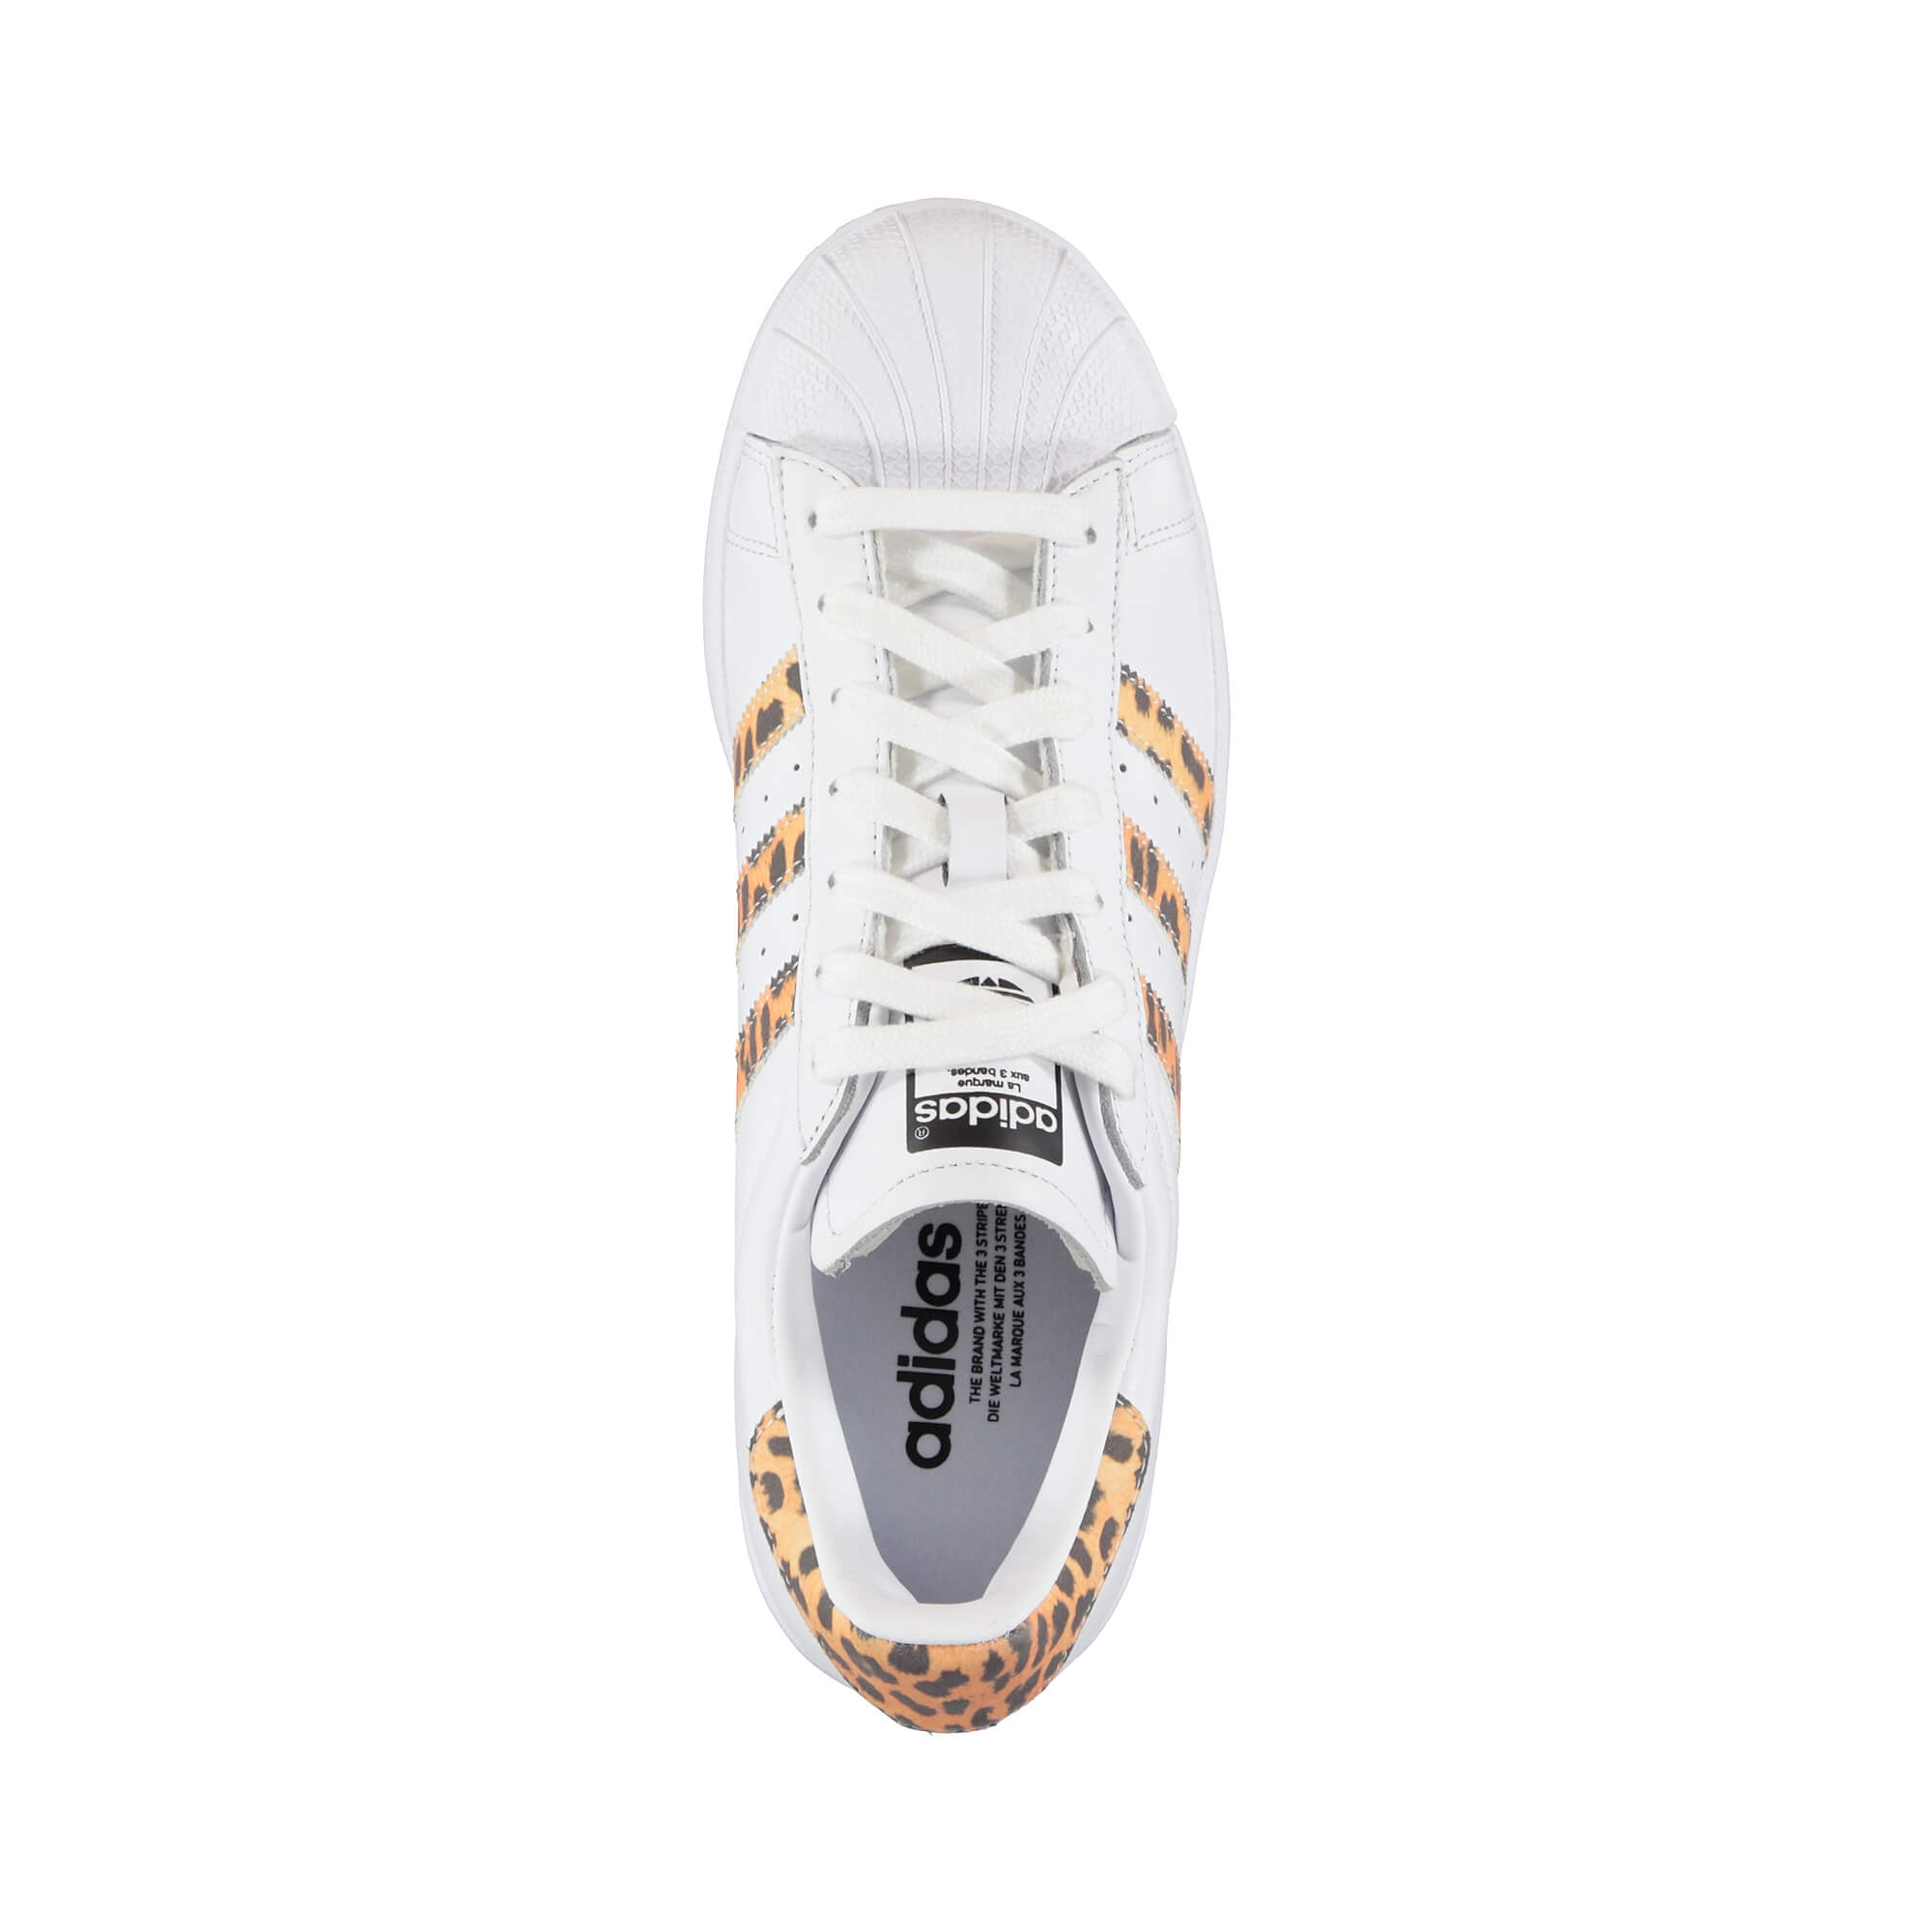 adidas Superstar Kadın Beyaz Sneaker